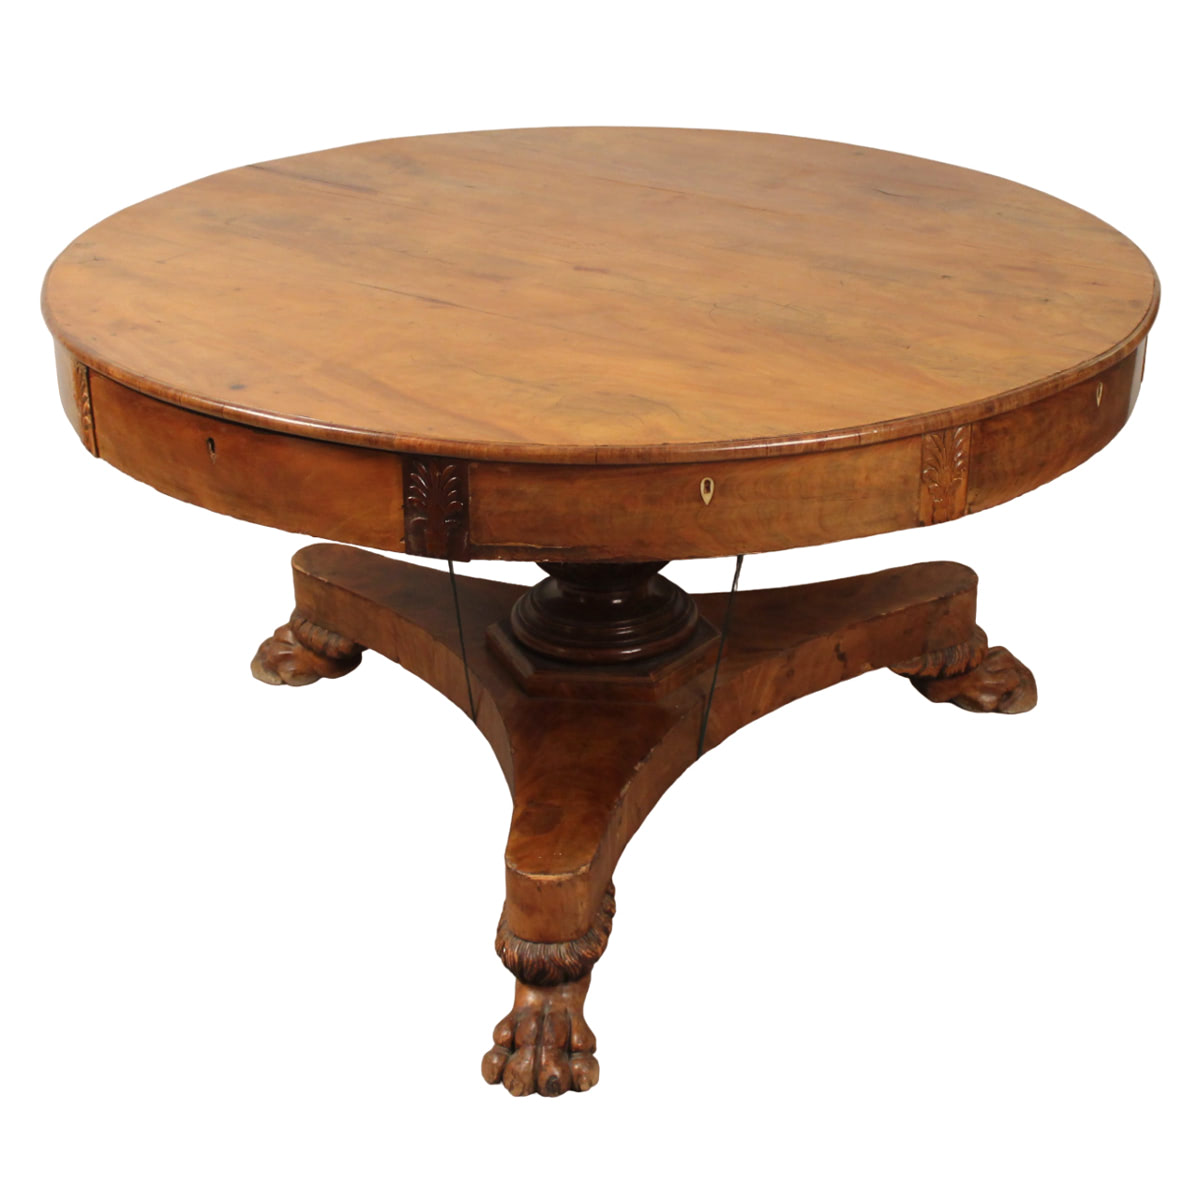 Grande tavolo circolare con cinque sedie - Large circular table with five chairs